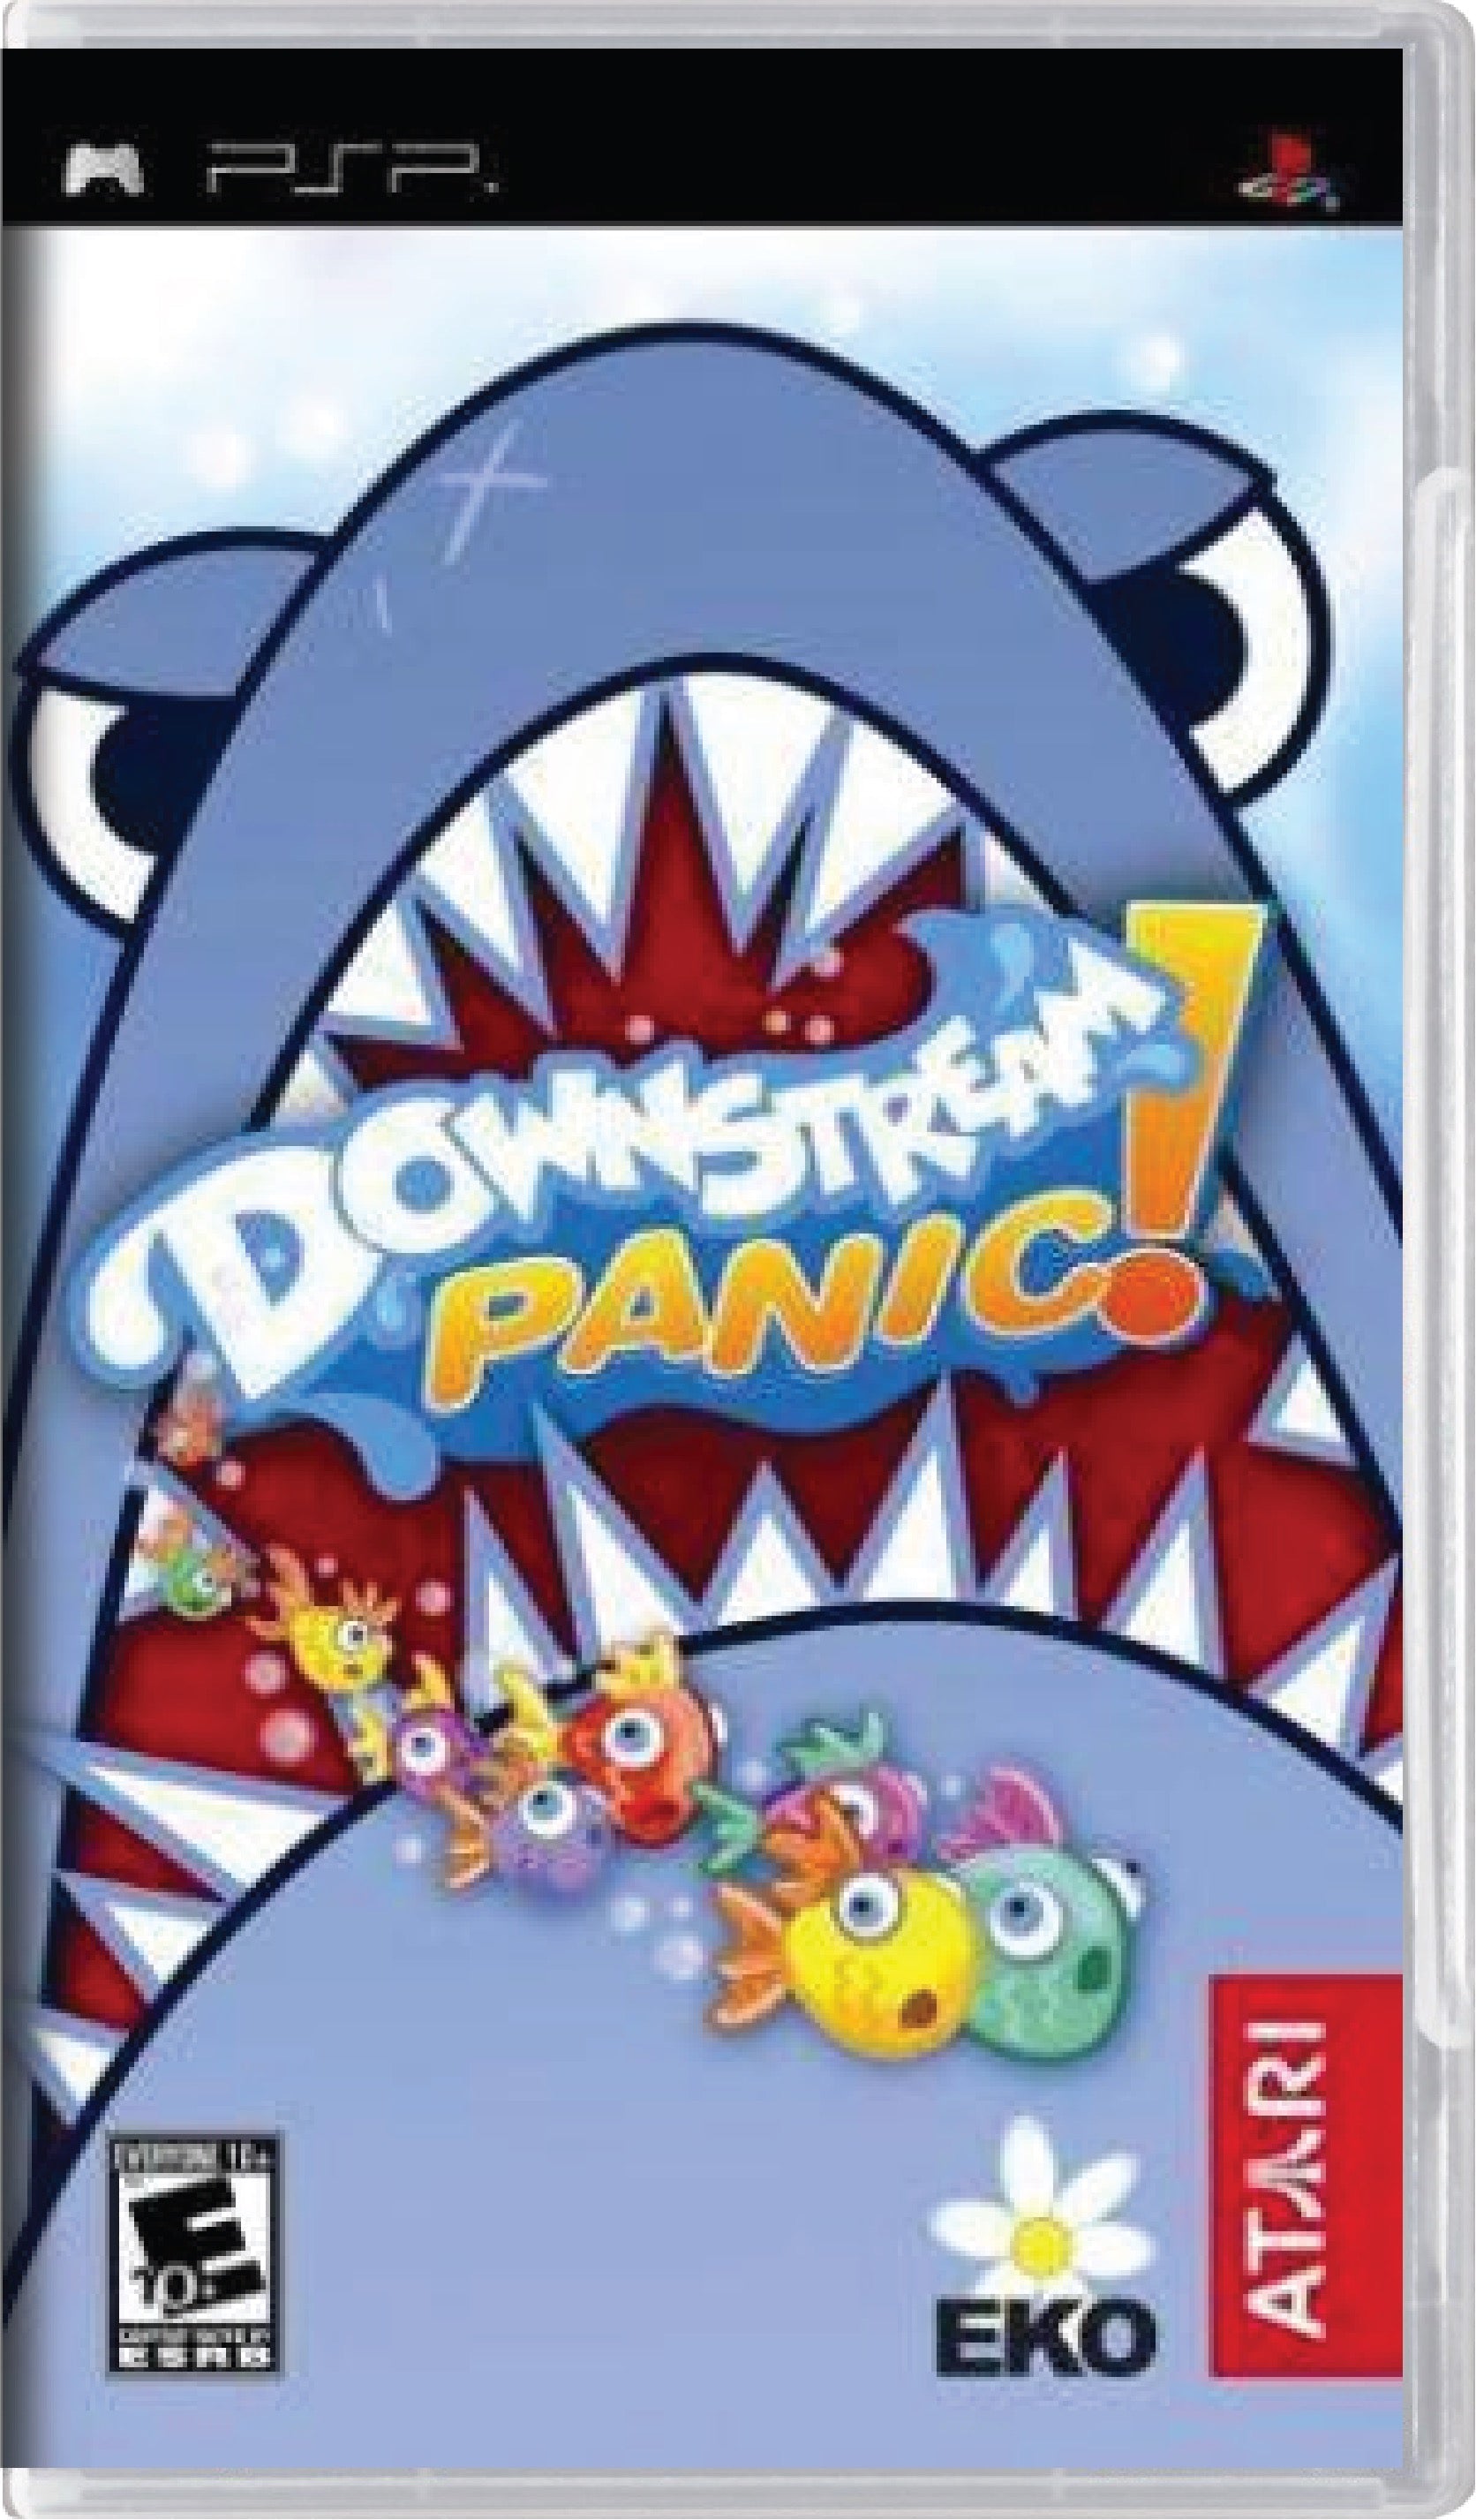 Downstream Panic Cover Art